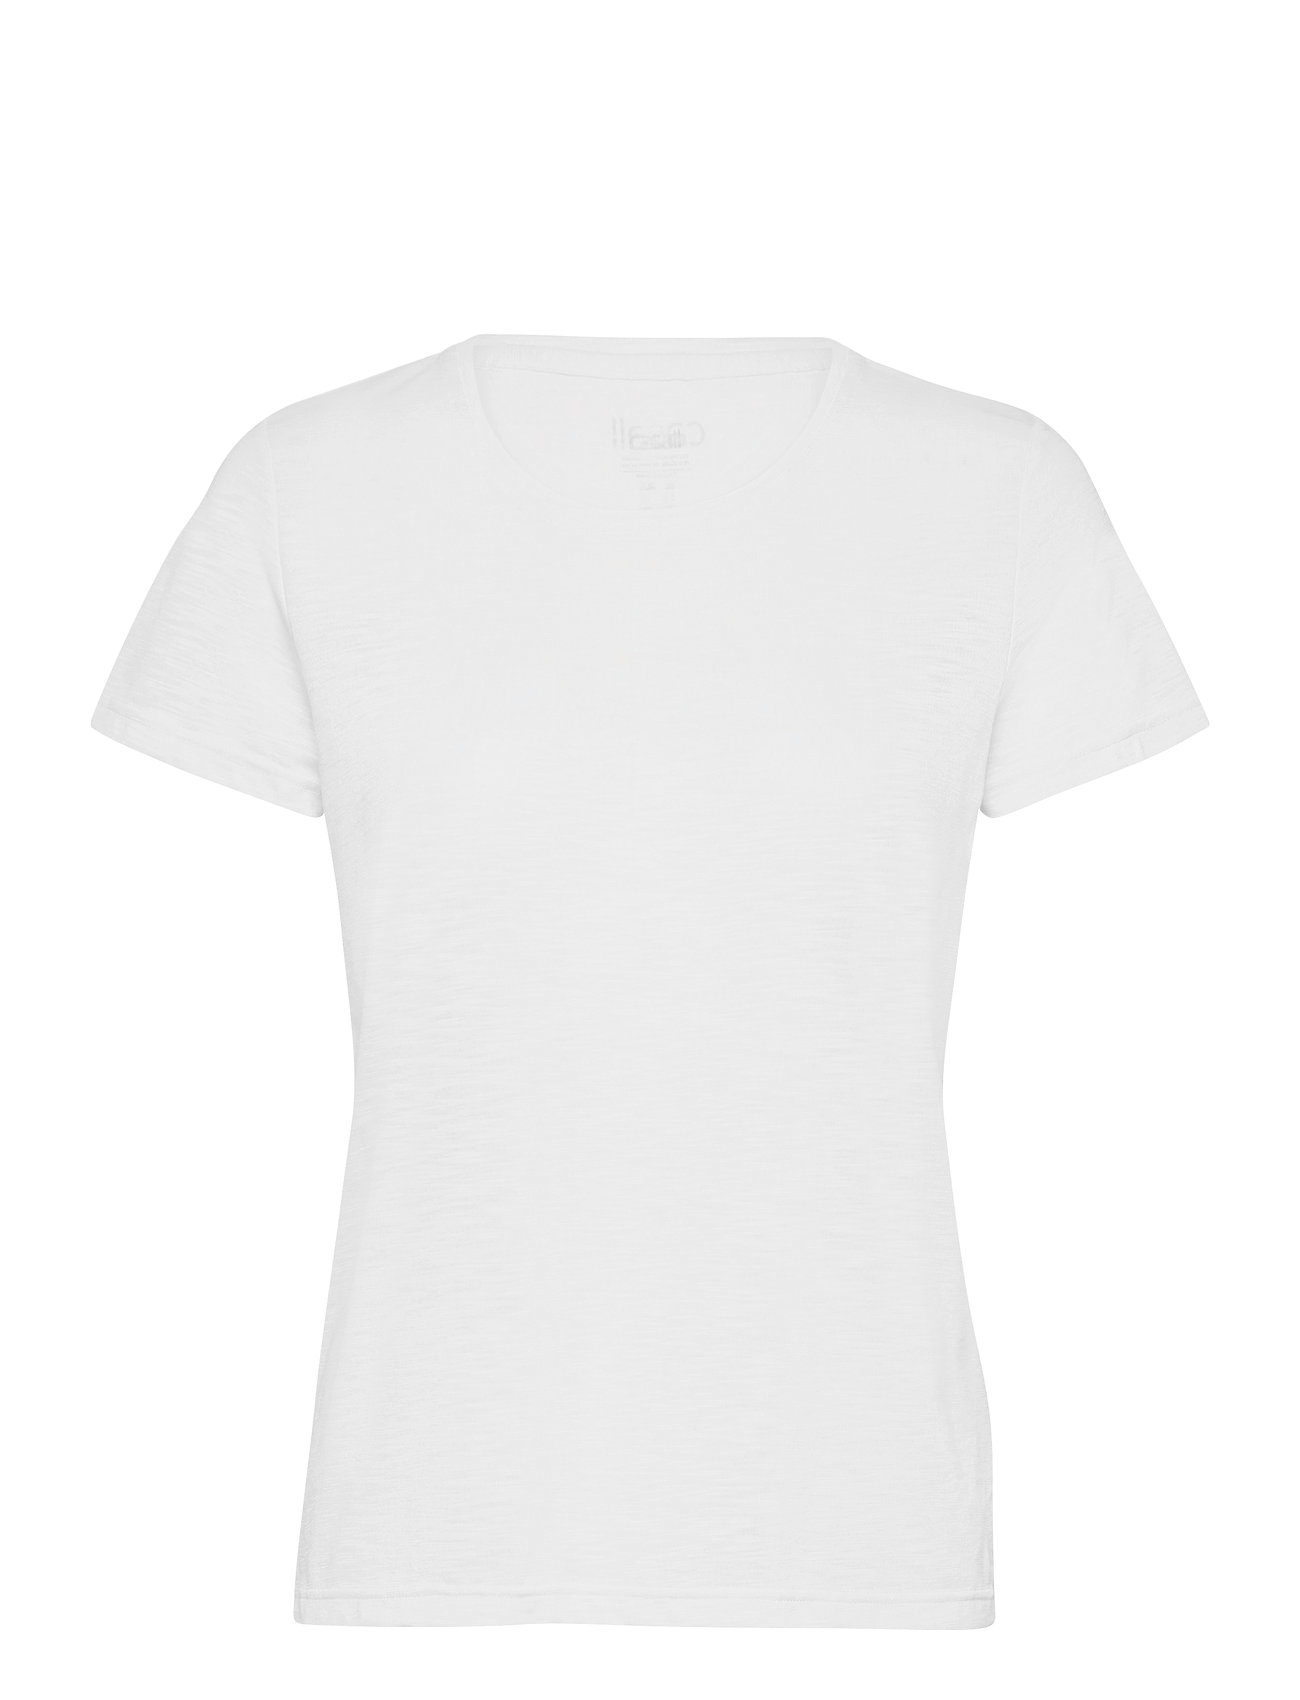 Texture Tee T-shirts & Tops Short-sleeved Valkoinen Casall